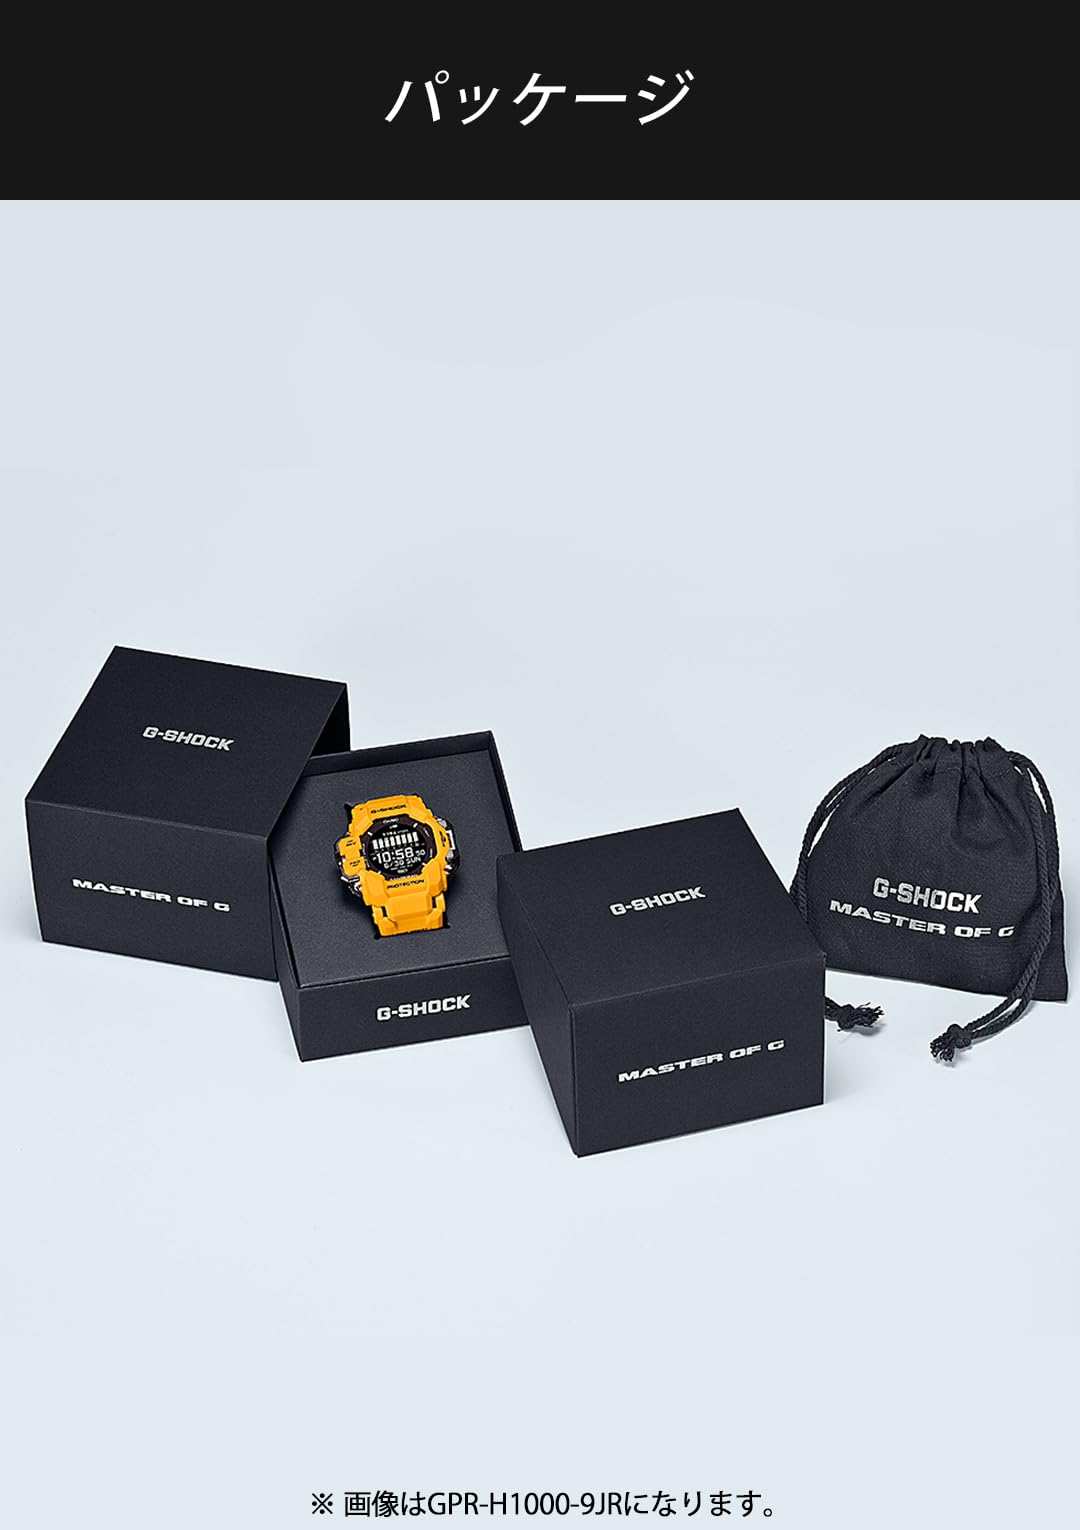 [カシオ] 腕時計 ジーショック RANGMAN 【国内正規品】 GPS 心拍計 Bluetooth搭載 バイオマスプラスチック採用 GPR-H1000-1JR メンズ ブラック - BanzaiHobby